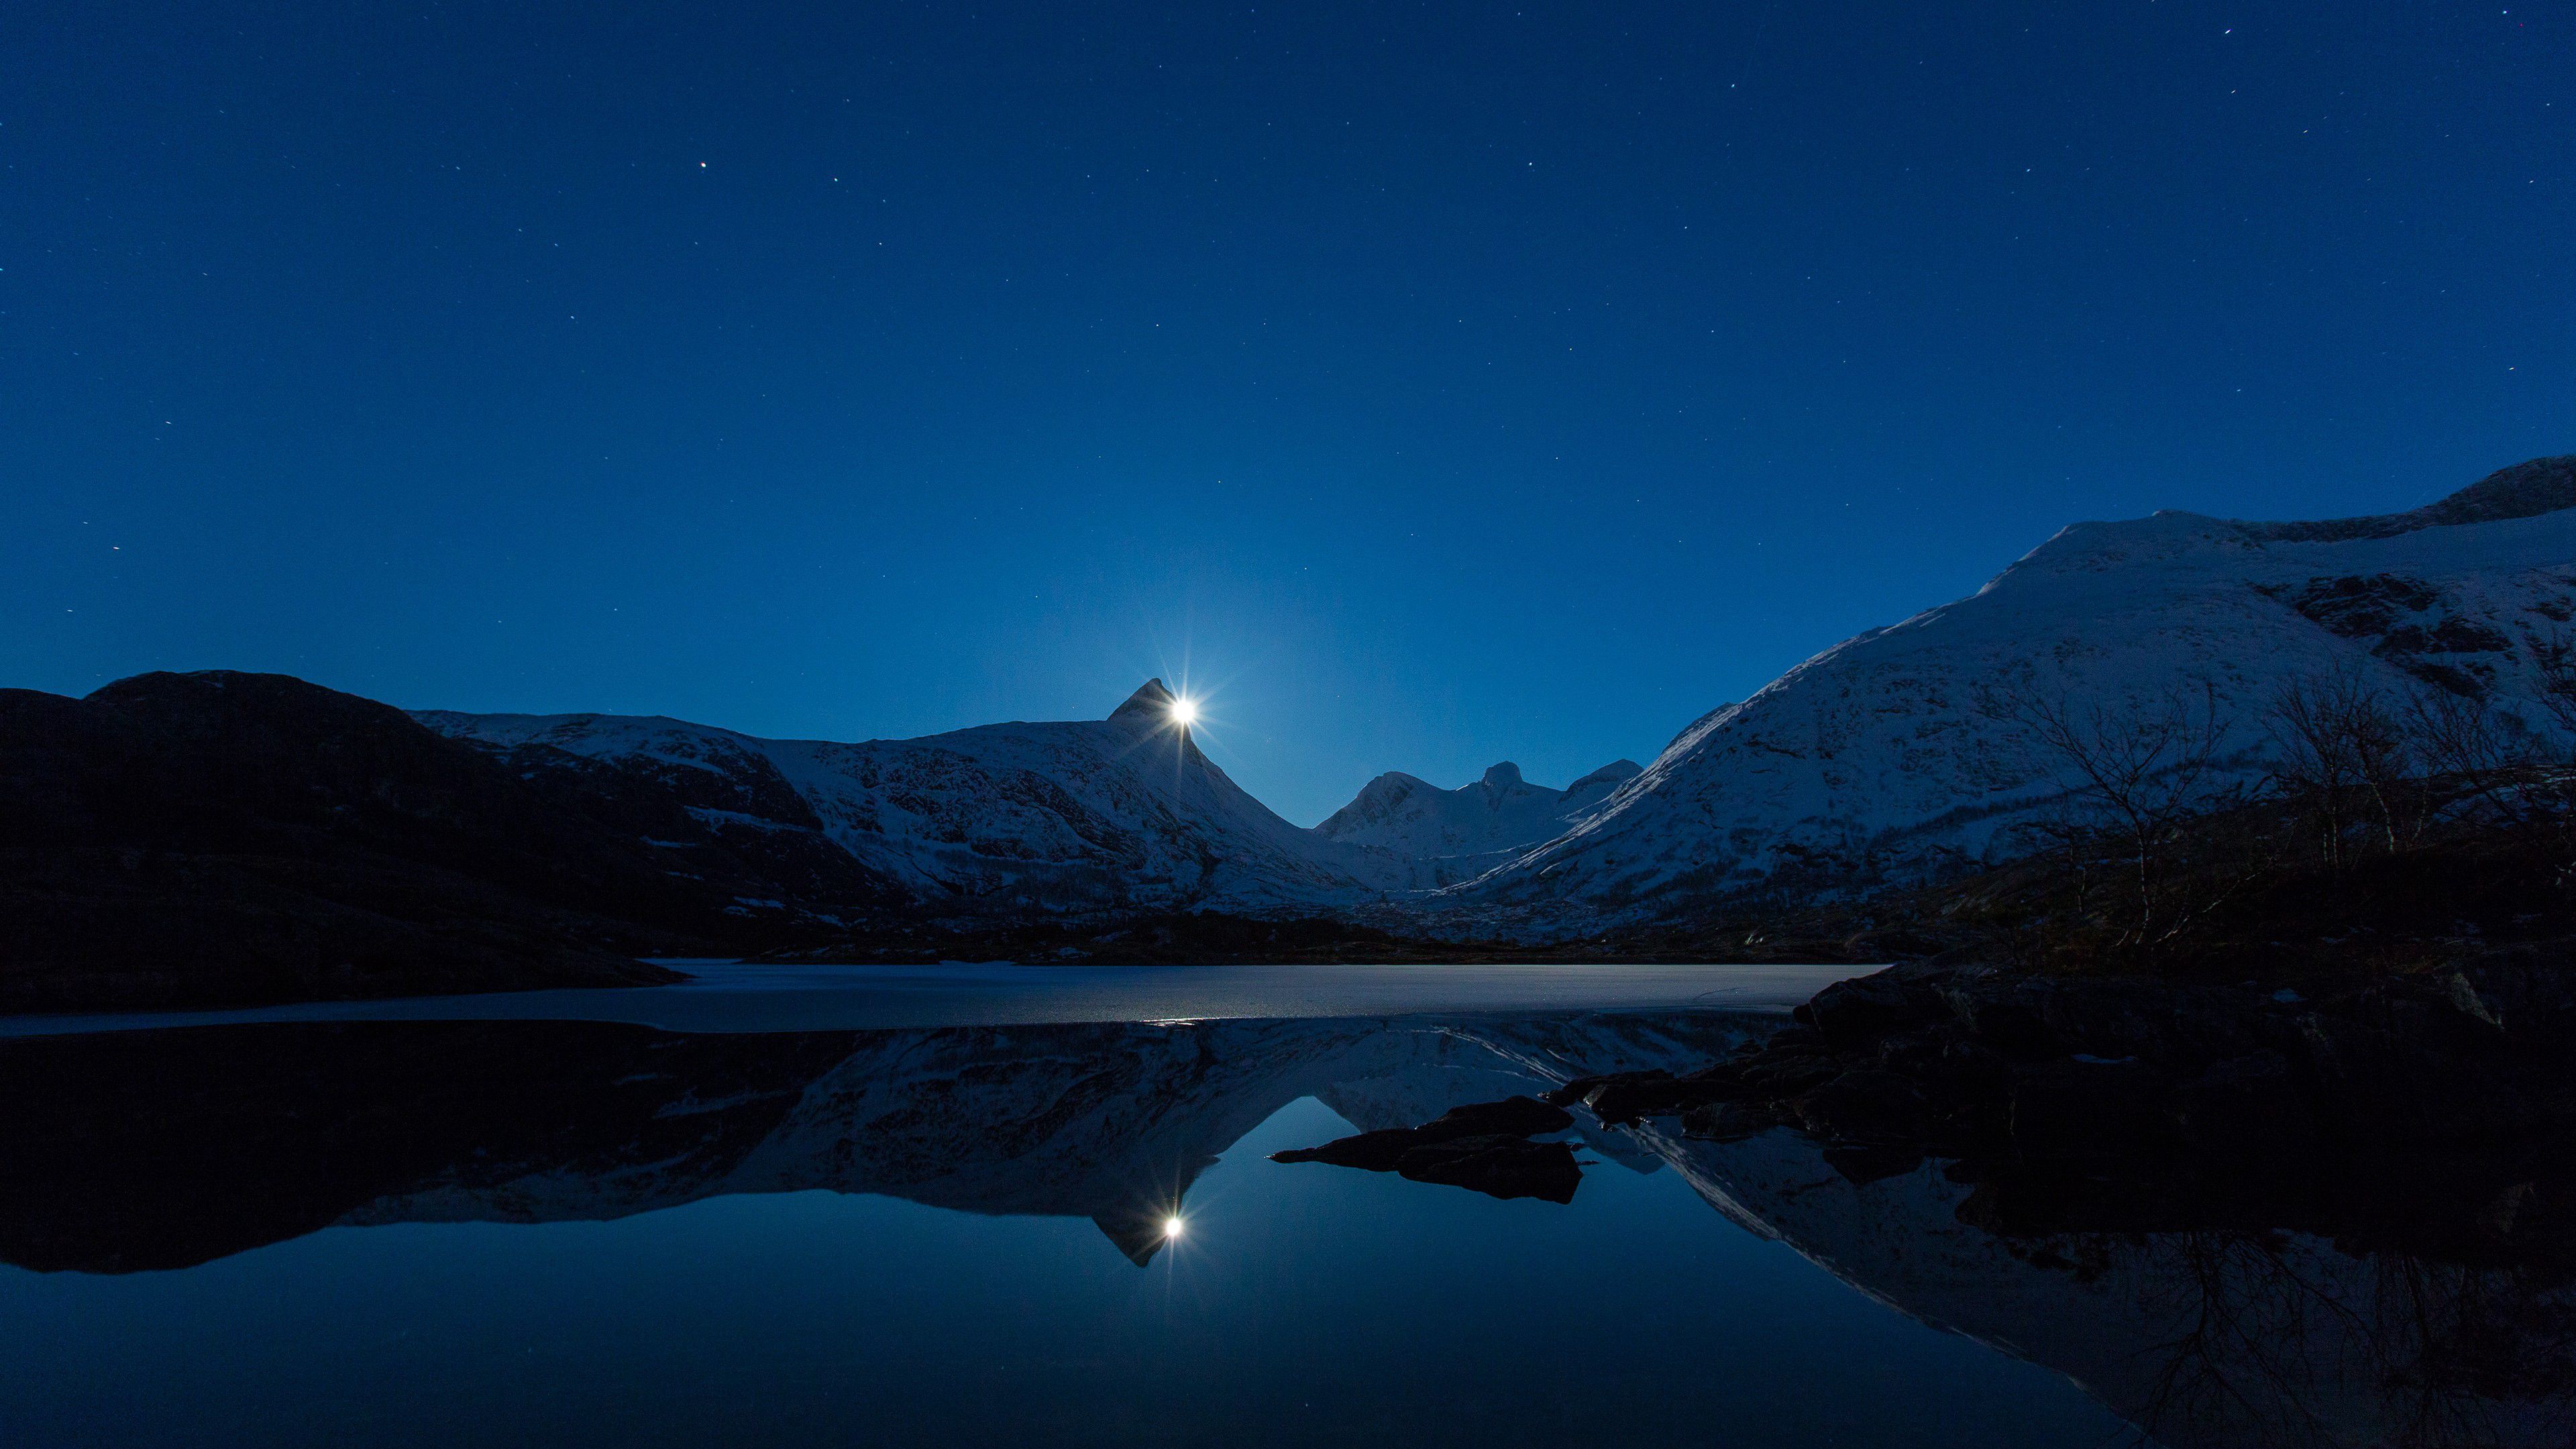 静谧的夜晚，满天的繁星，雪山，湖泊，月光唯美安静景色风光壁纸图片